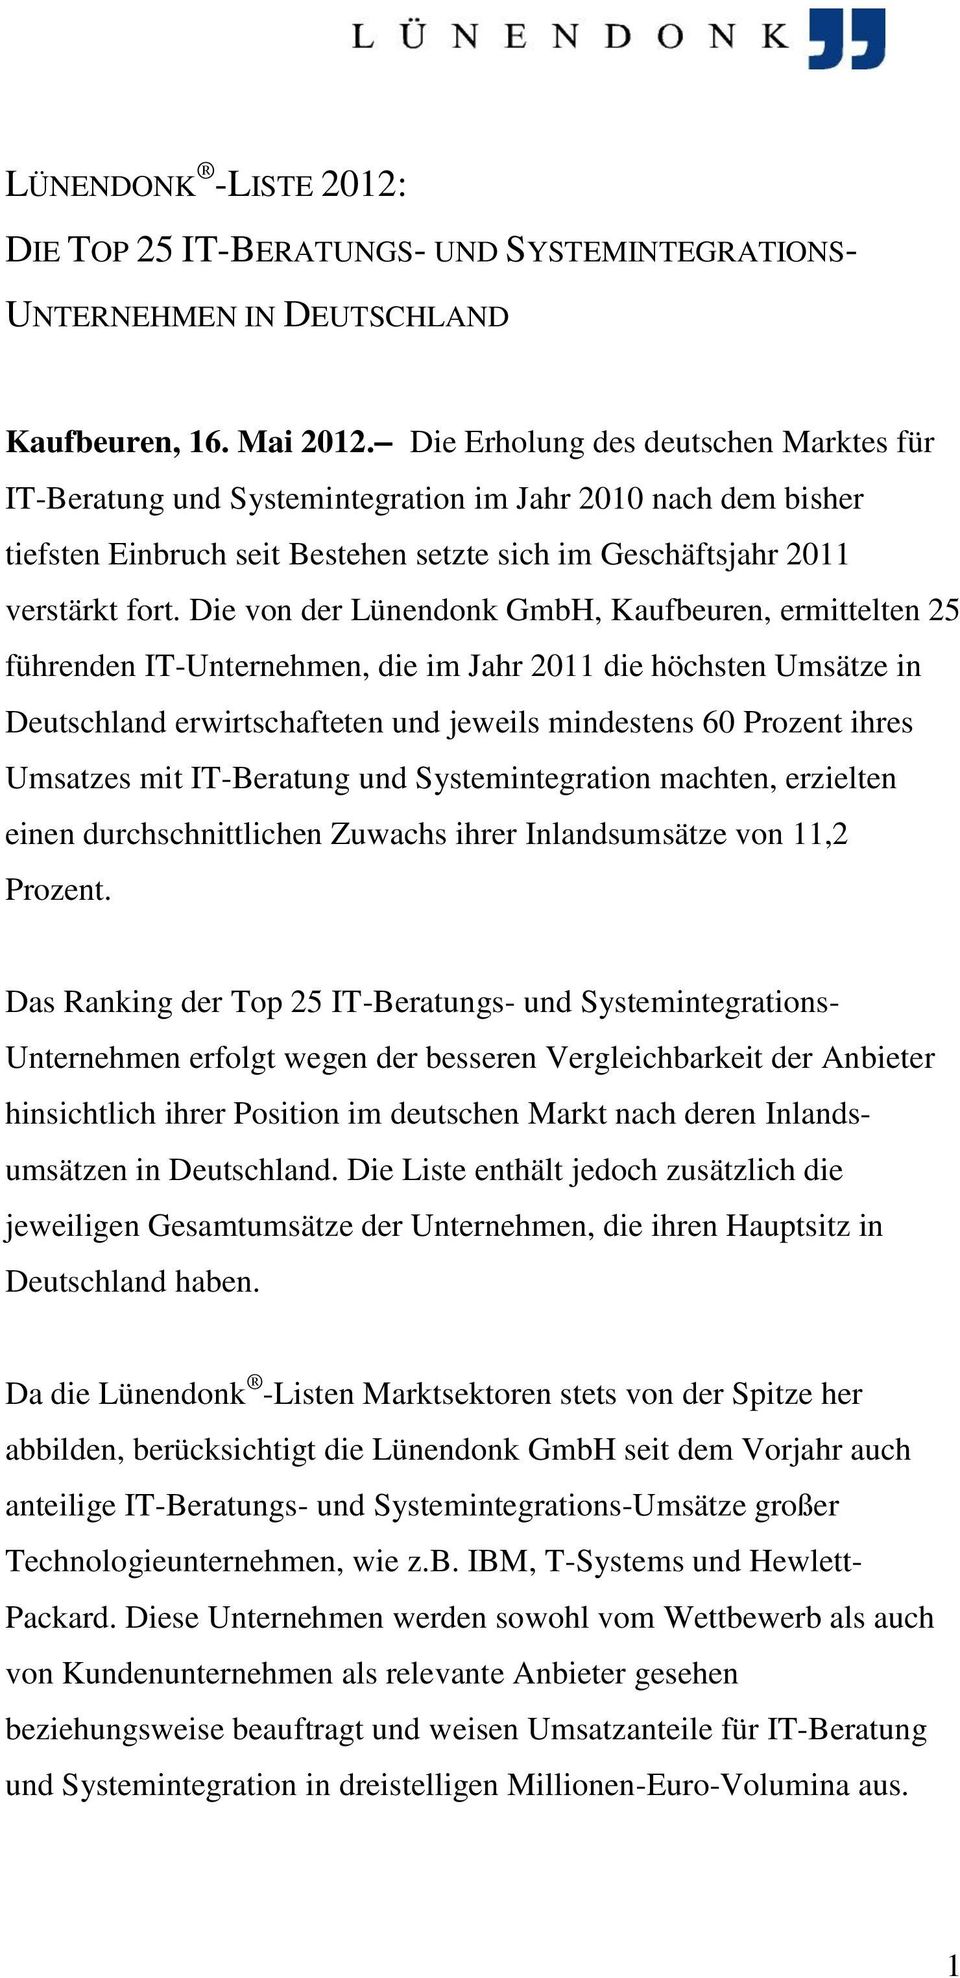 Die von der Lünendonk GmbH, Kaufbeuren, ermittelten 25 führenden IT-Unternehmen, die im Jahr 2011 die höchsten Umsätze in Deutschland erwirtschafteten und jeweils mindestens 60 Prozent ihres Umsatzes